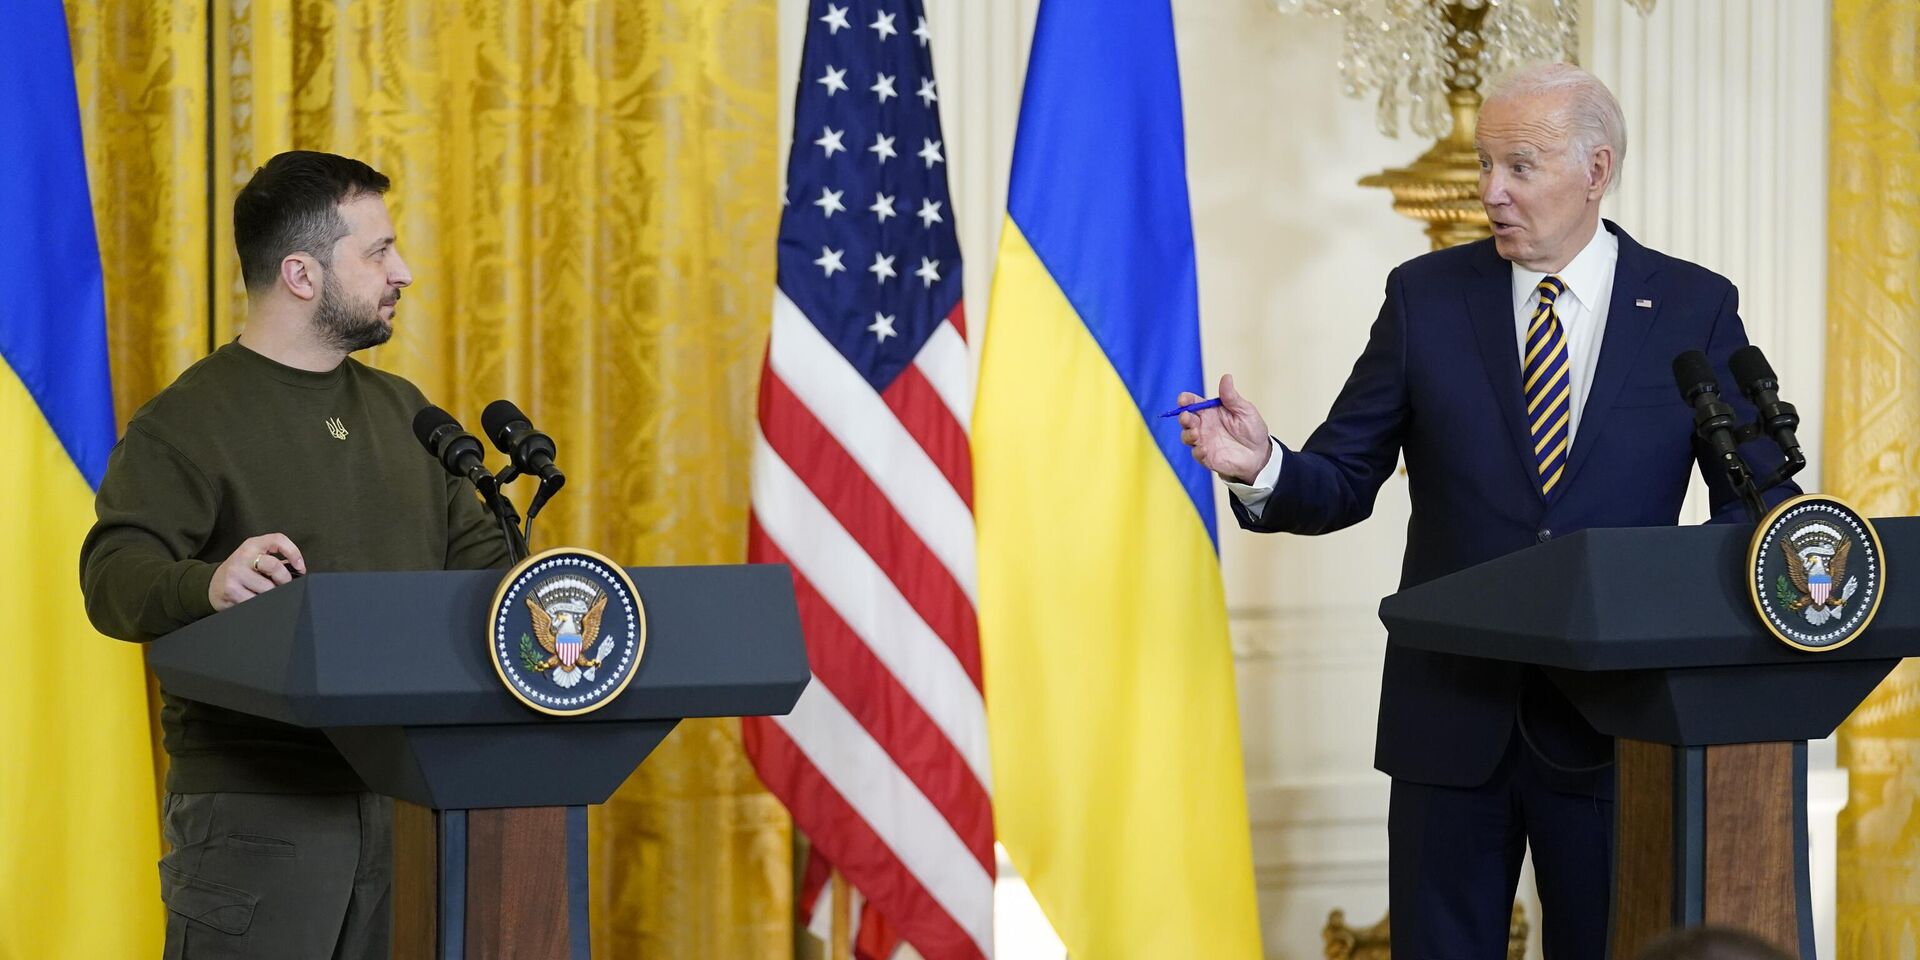 Президент США Джо Байден и президент Украины Владимир Зеленский во время пресс-конференции в Белом доме в Вашингтоне. 21 декабря 2022 года - ИноСМИ, 1920, 29.08.2023